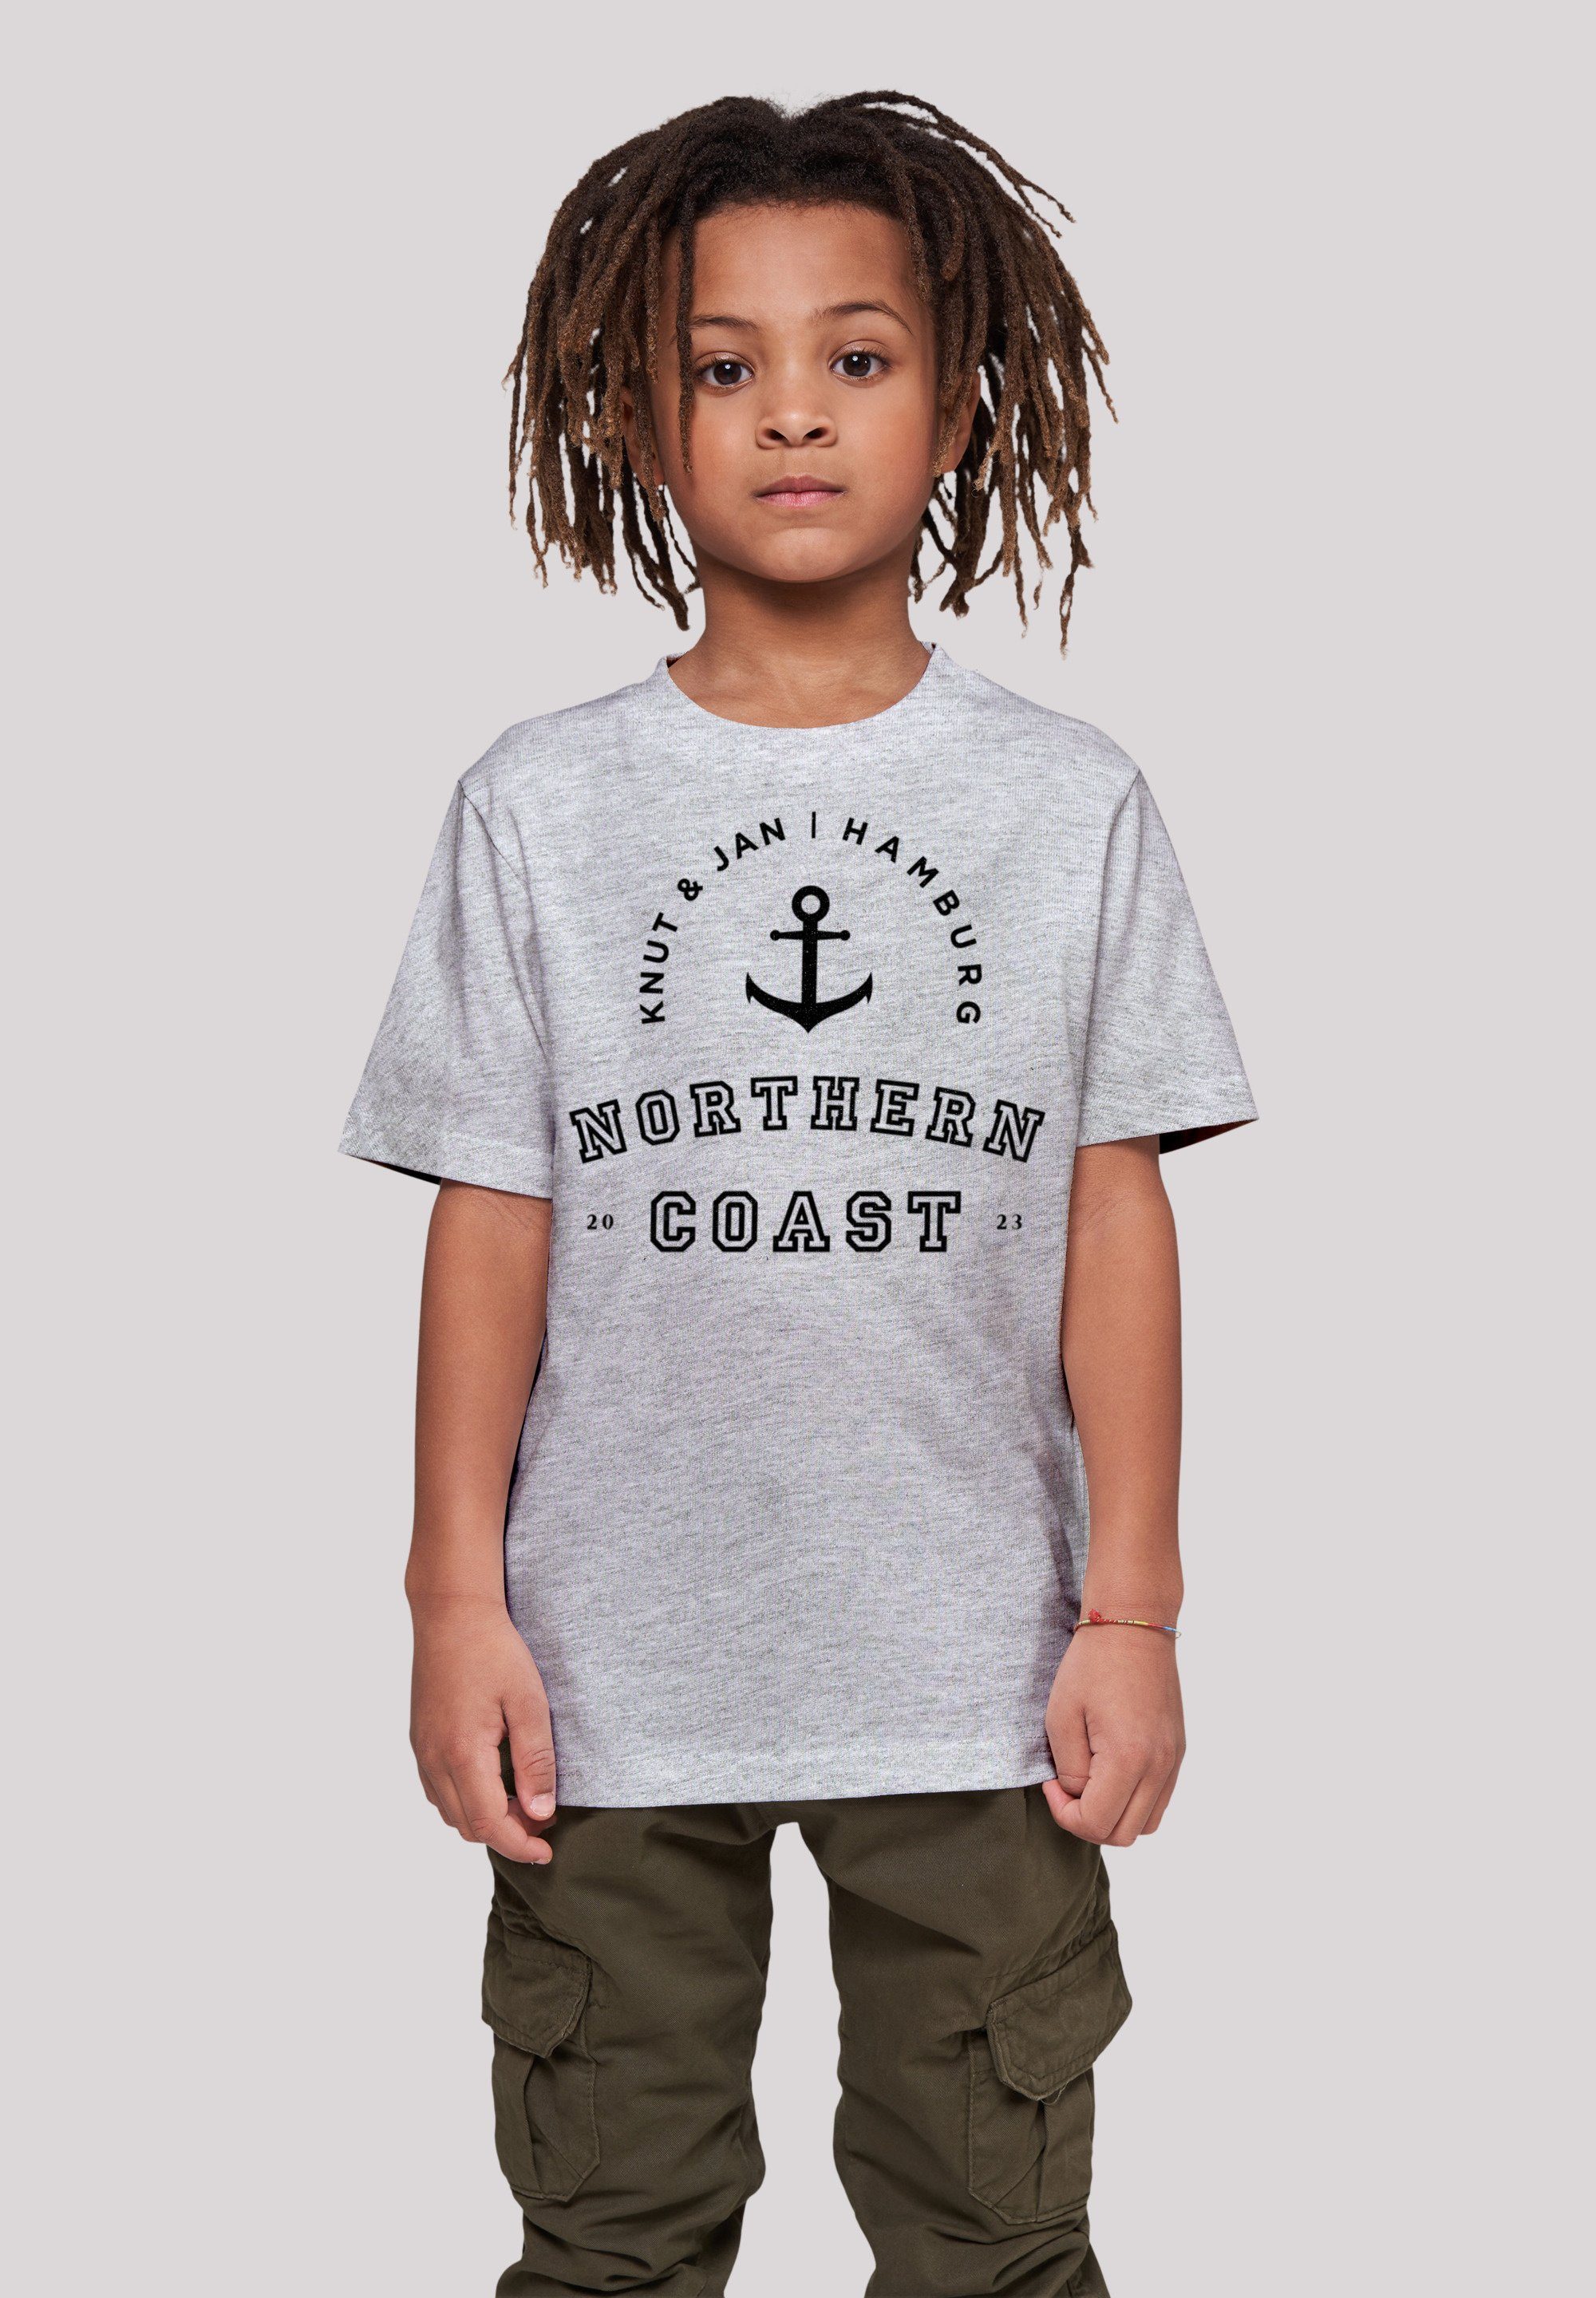 F4NT4STIC T-Shirt Northern Coast Knut & Jan Hamburg Print heather grey